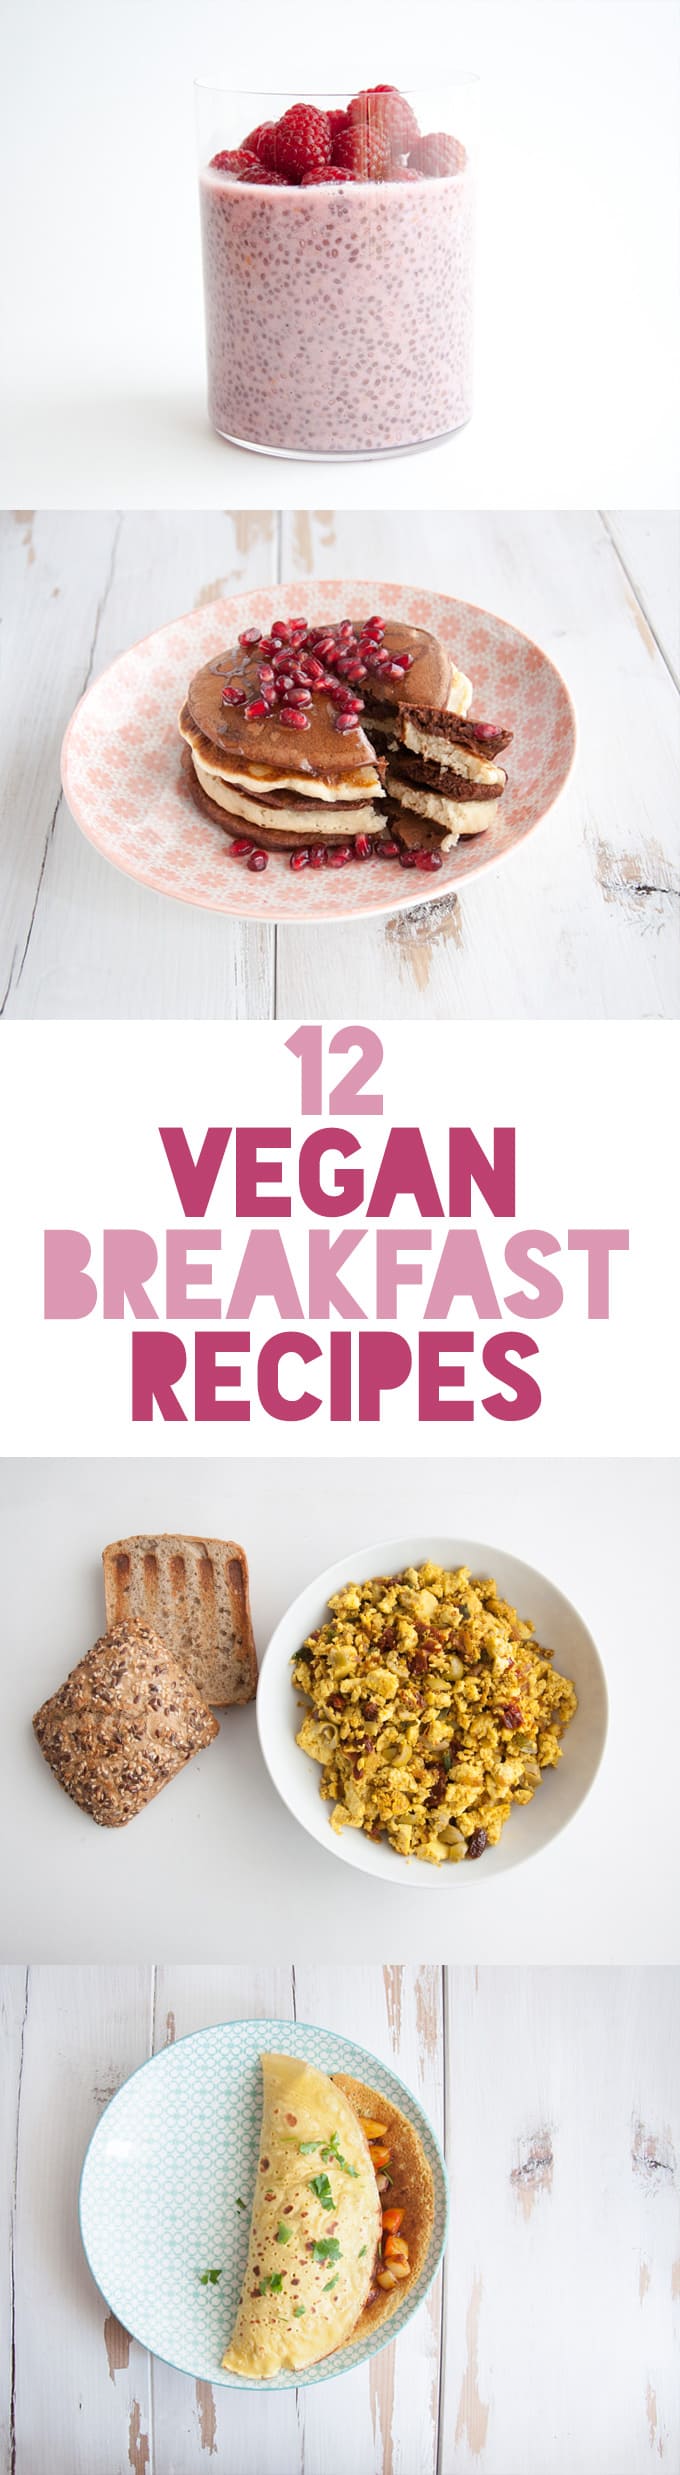 12 Vegan Breakfast Recipes | ElephantasticVegan.com